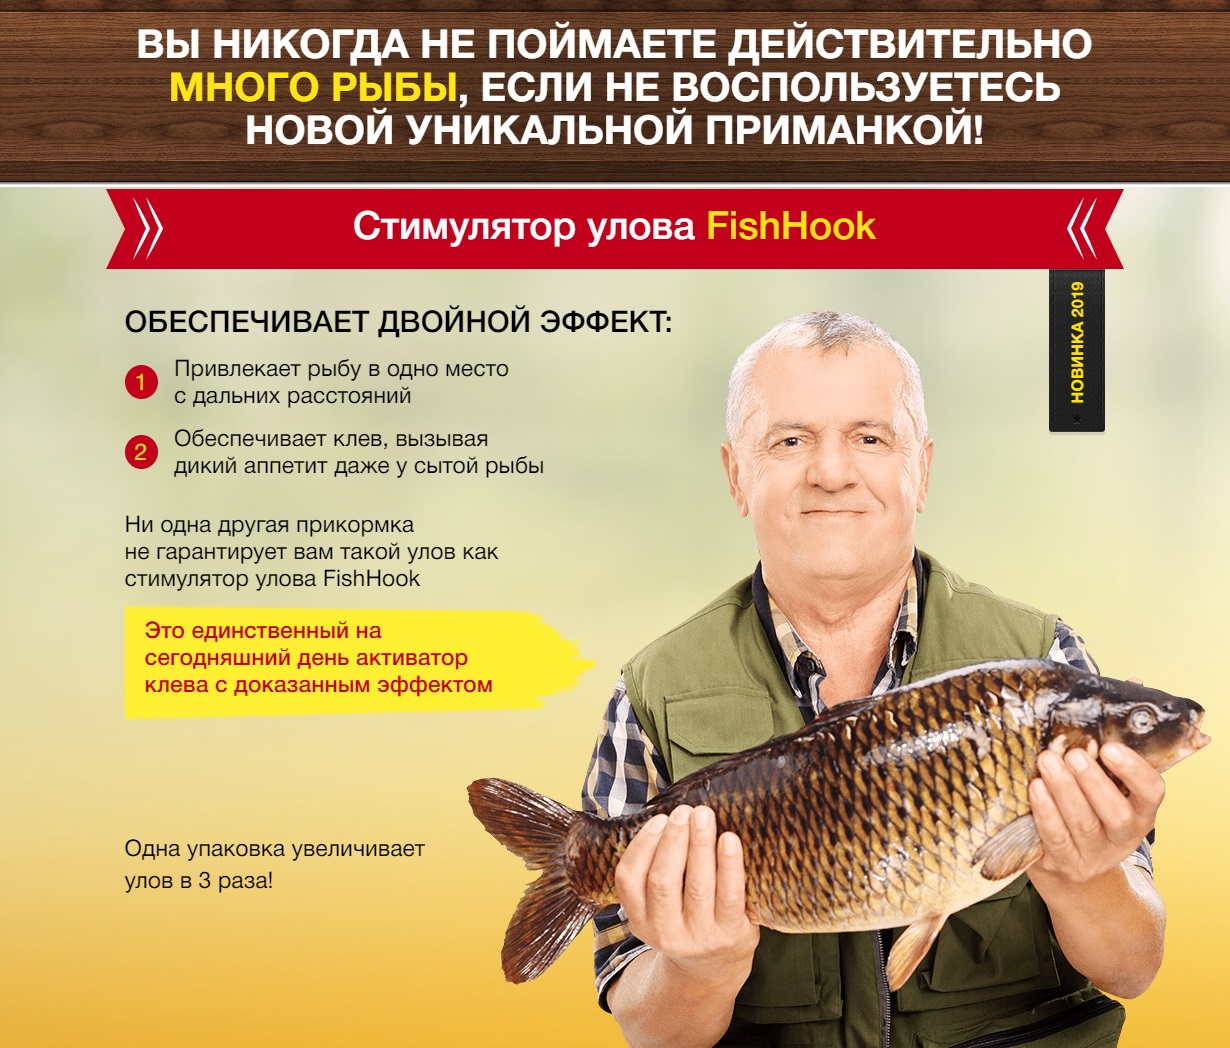 Активатор клева fishhungry (видео). есть ли отрицательные отзывы? мнения опытных рыбаков и рыболовов